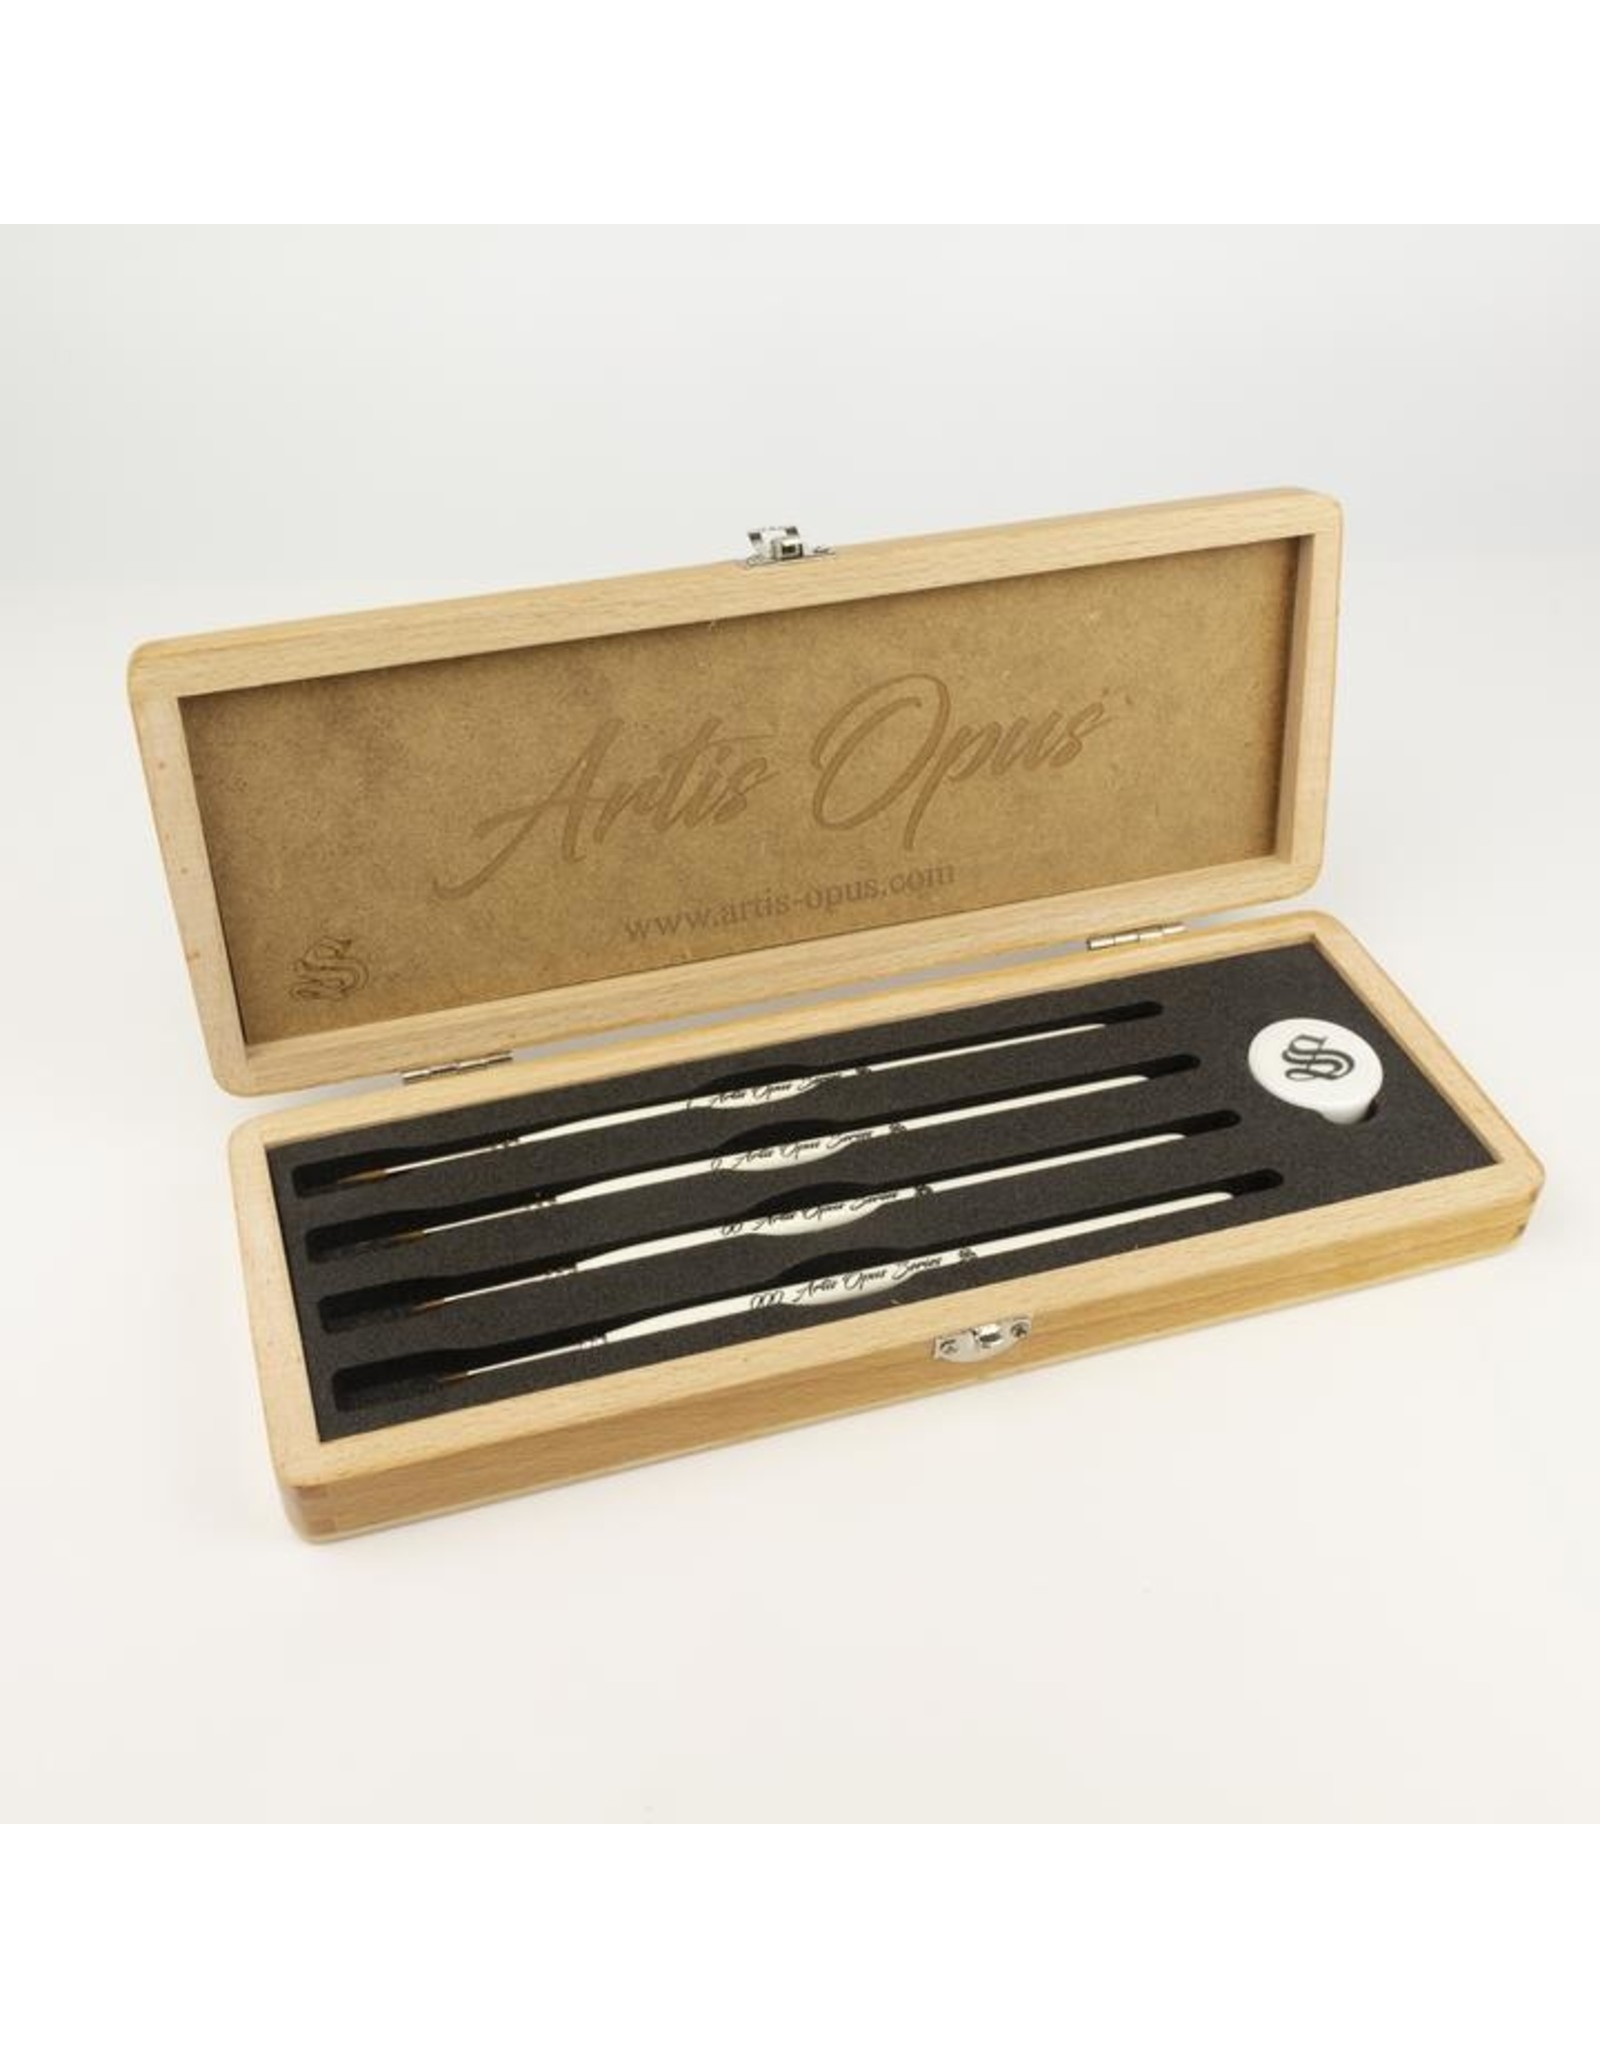 Artis Opus - Series S - Brush Set (4 slot)